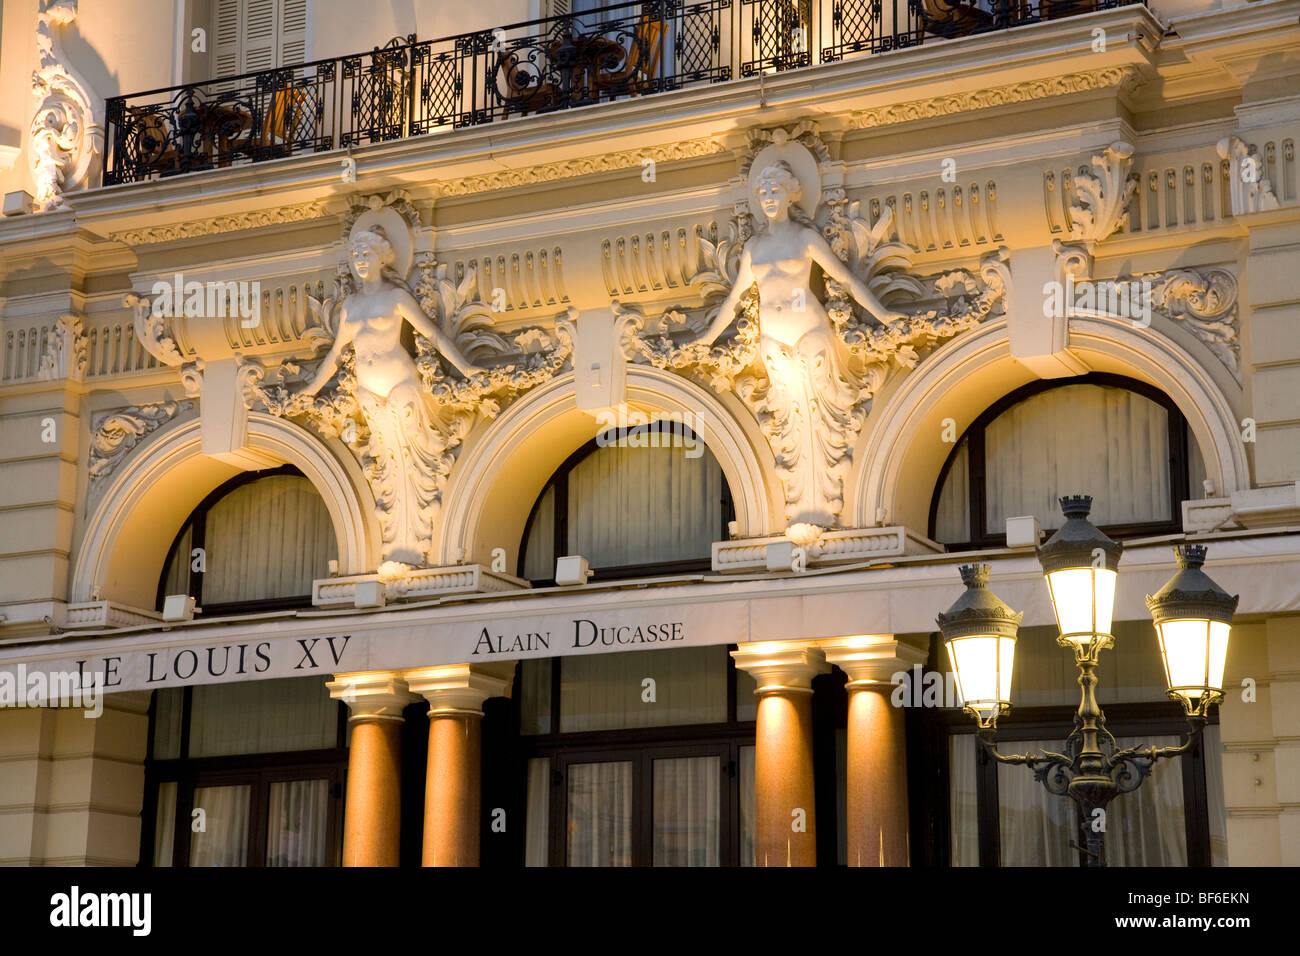 Gourmet Restaurant Le Louis XV, Chefkoch Alain Ducasse, Hotel de Paris, Monte Carlo, Monaco, Cote D Azur, Provence, France Stock Photo